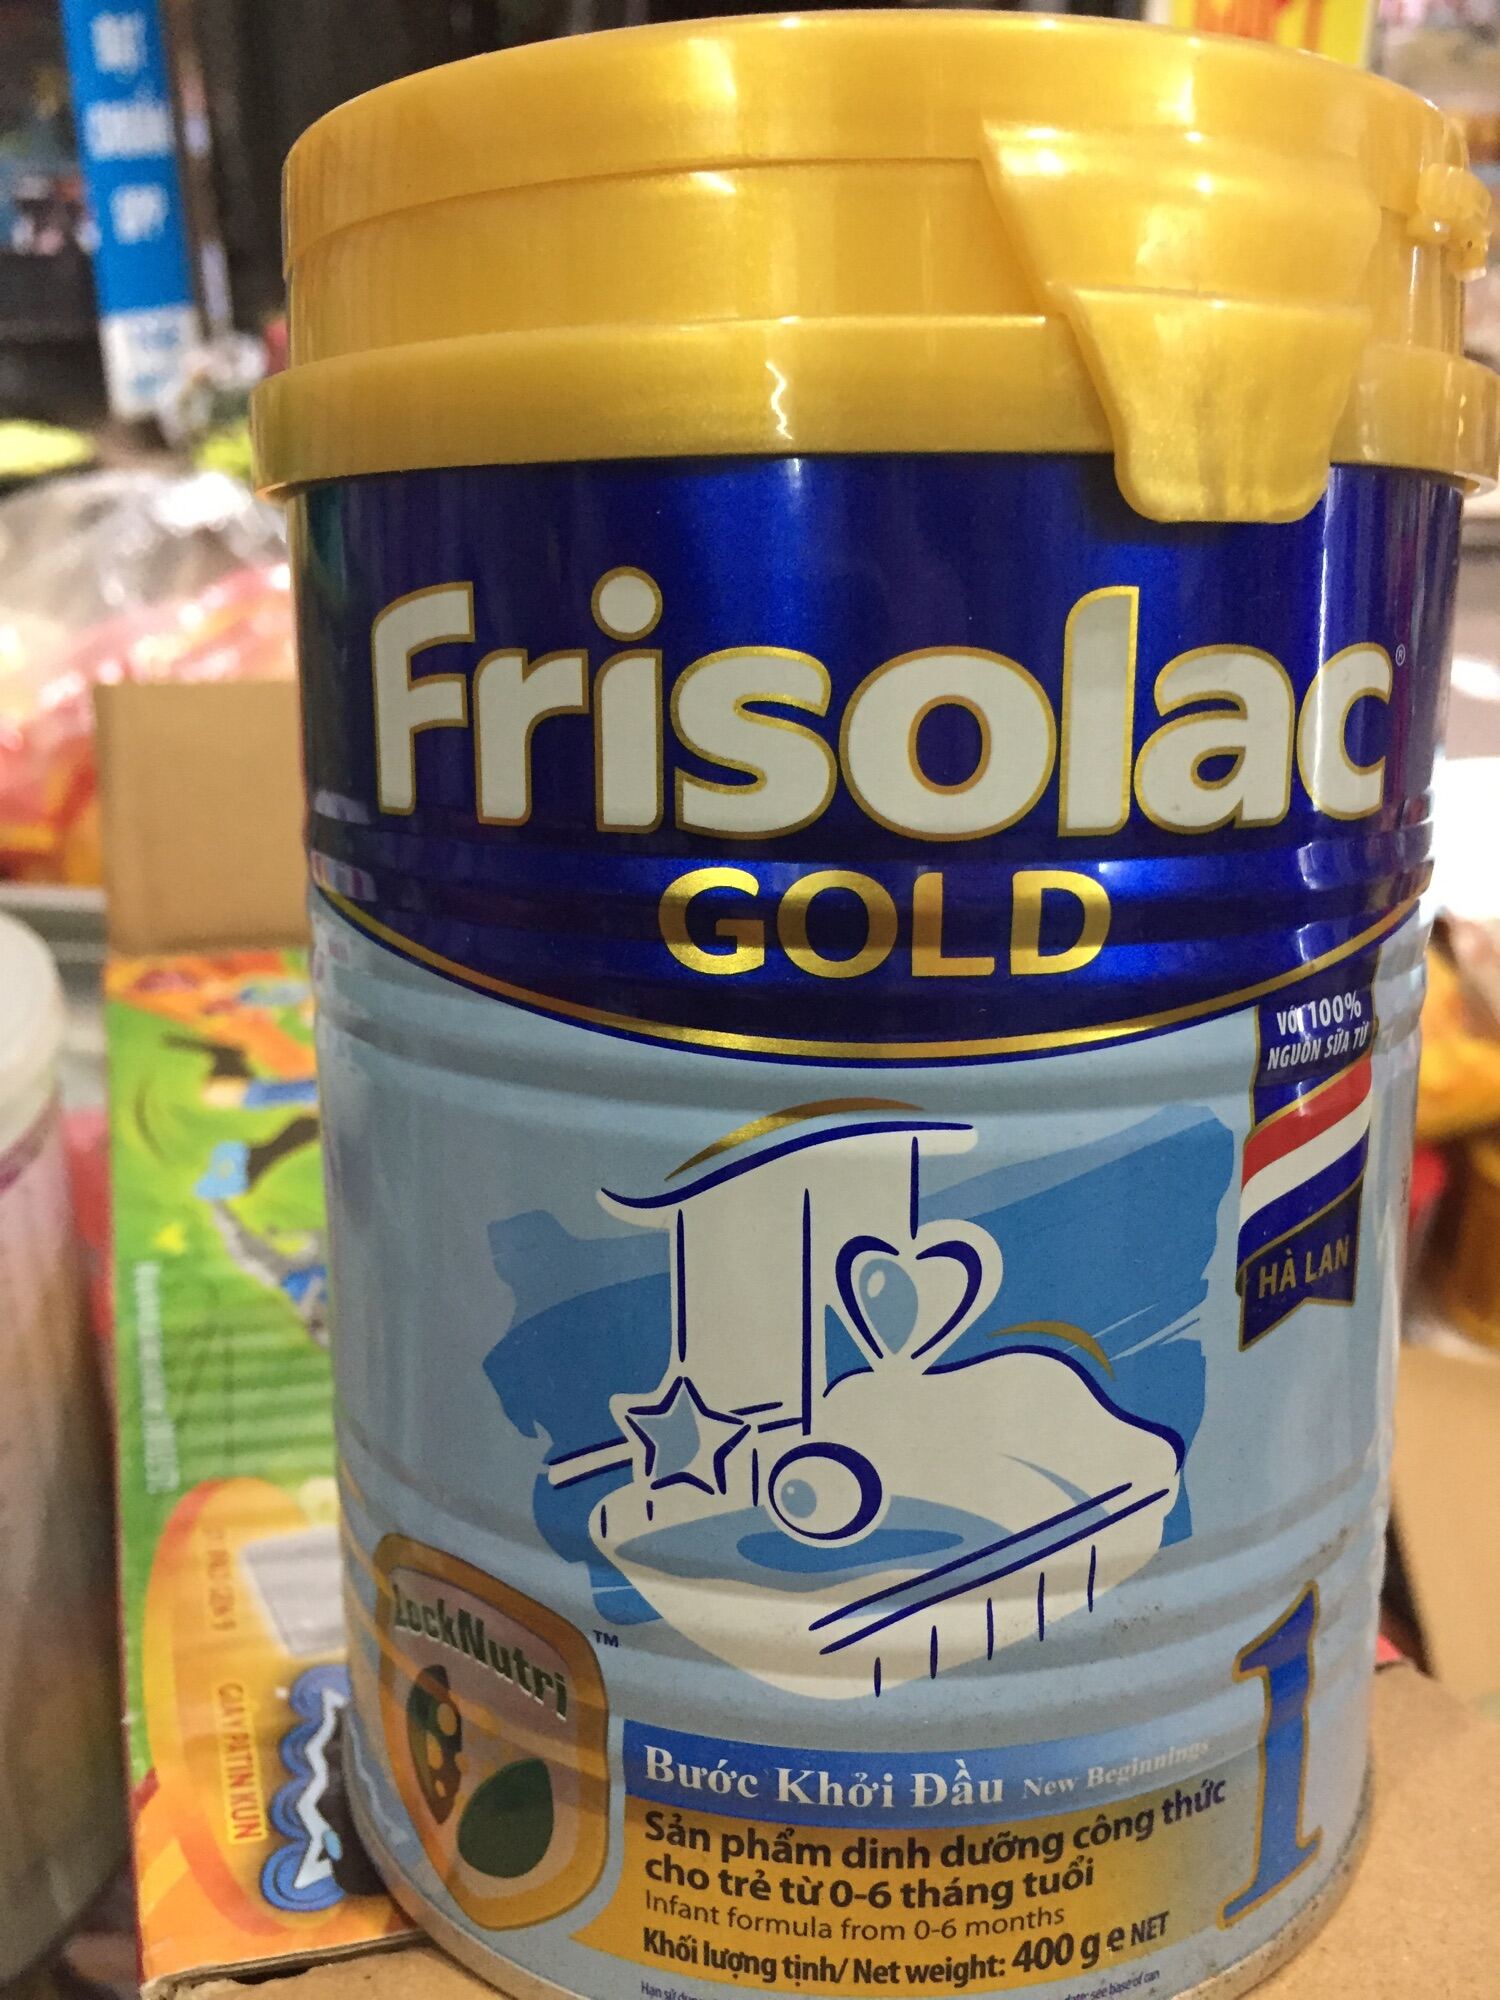 Sữa bột Frisolac Gold  Bước khởi đầu cho trẻ